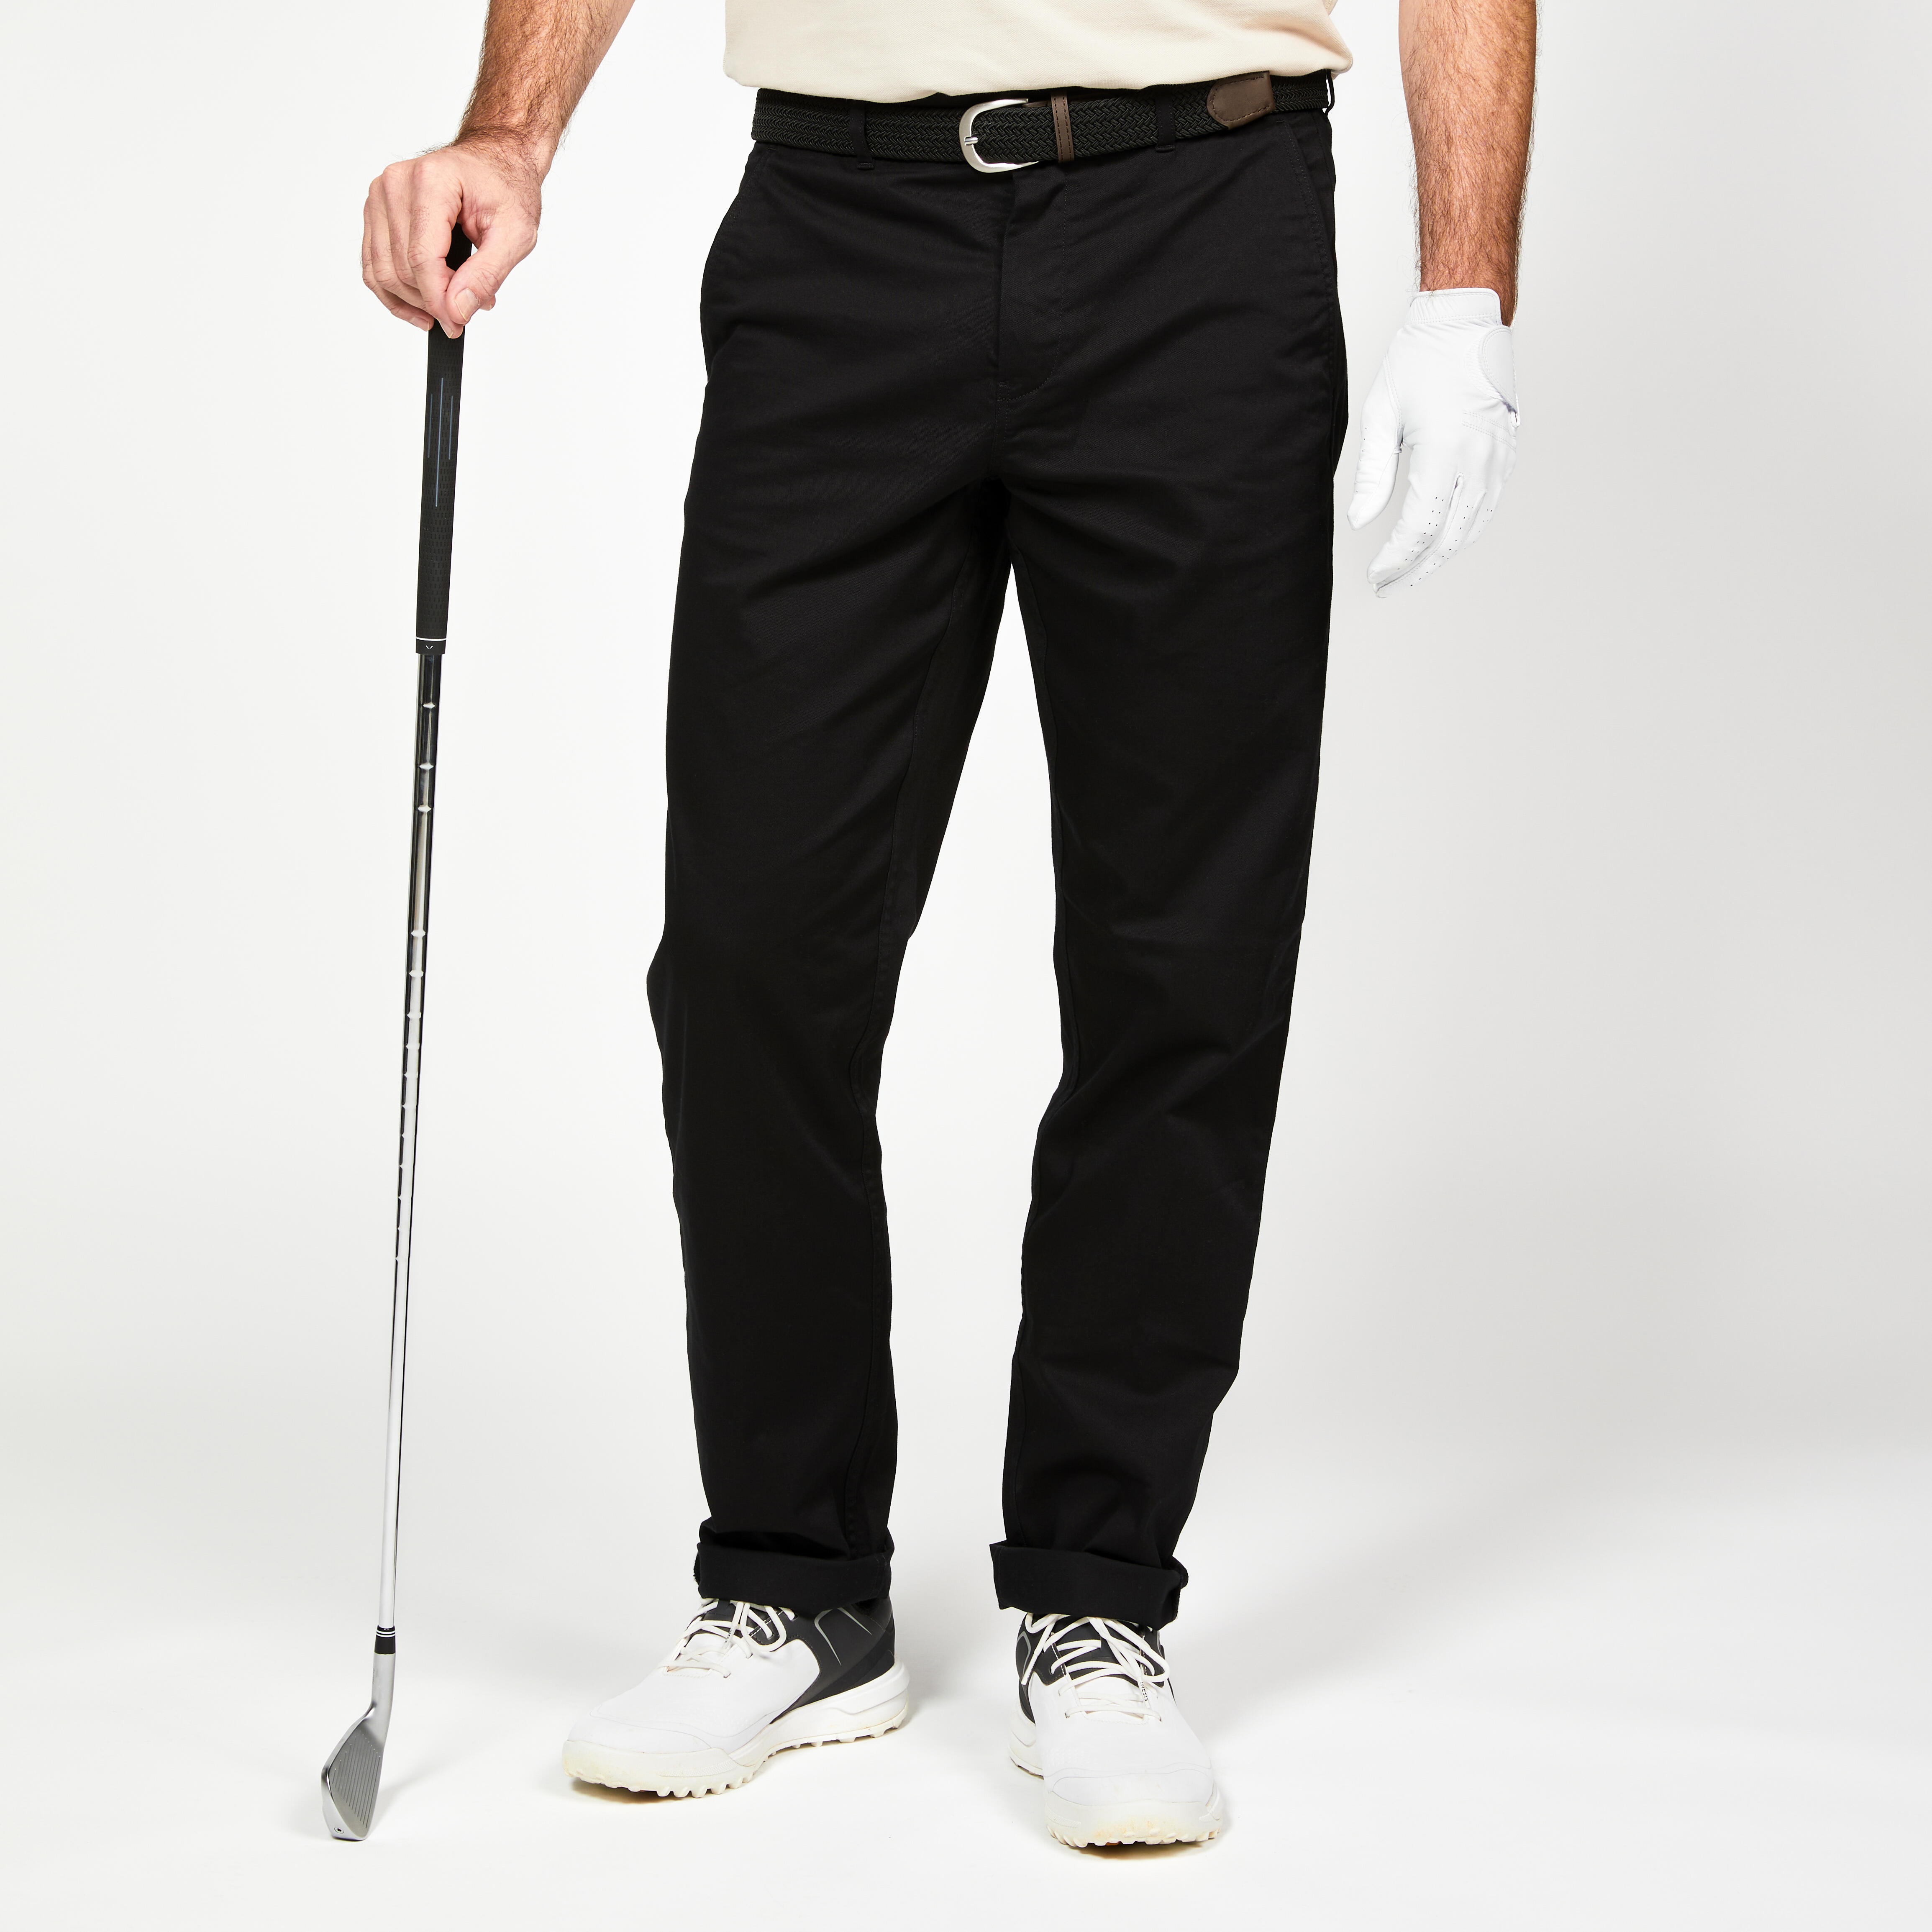 pantalon chino golf coton homme - mw500 noir - inesis